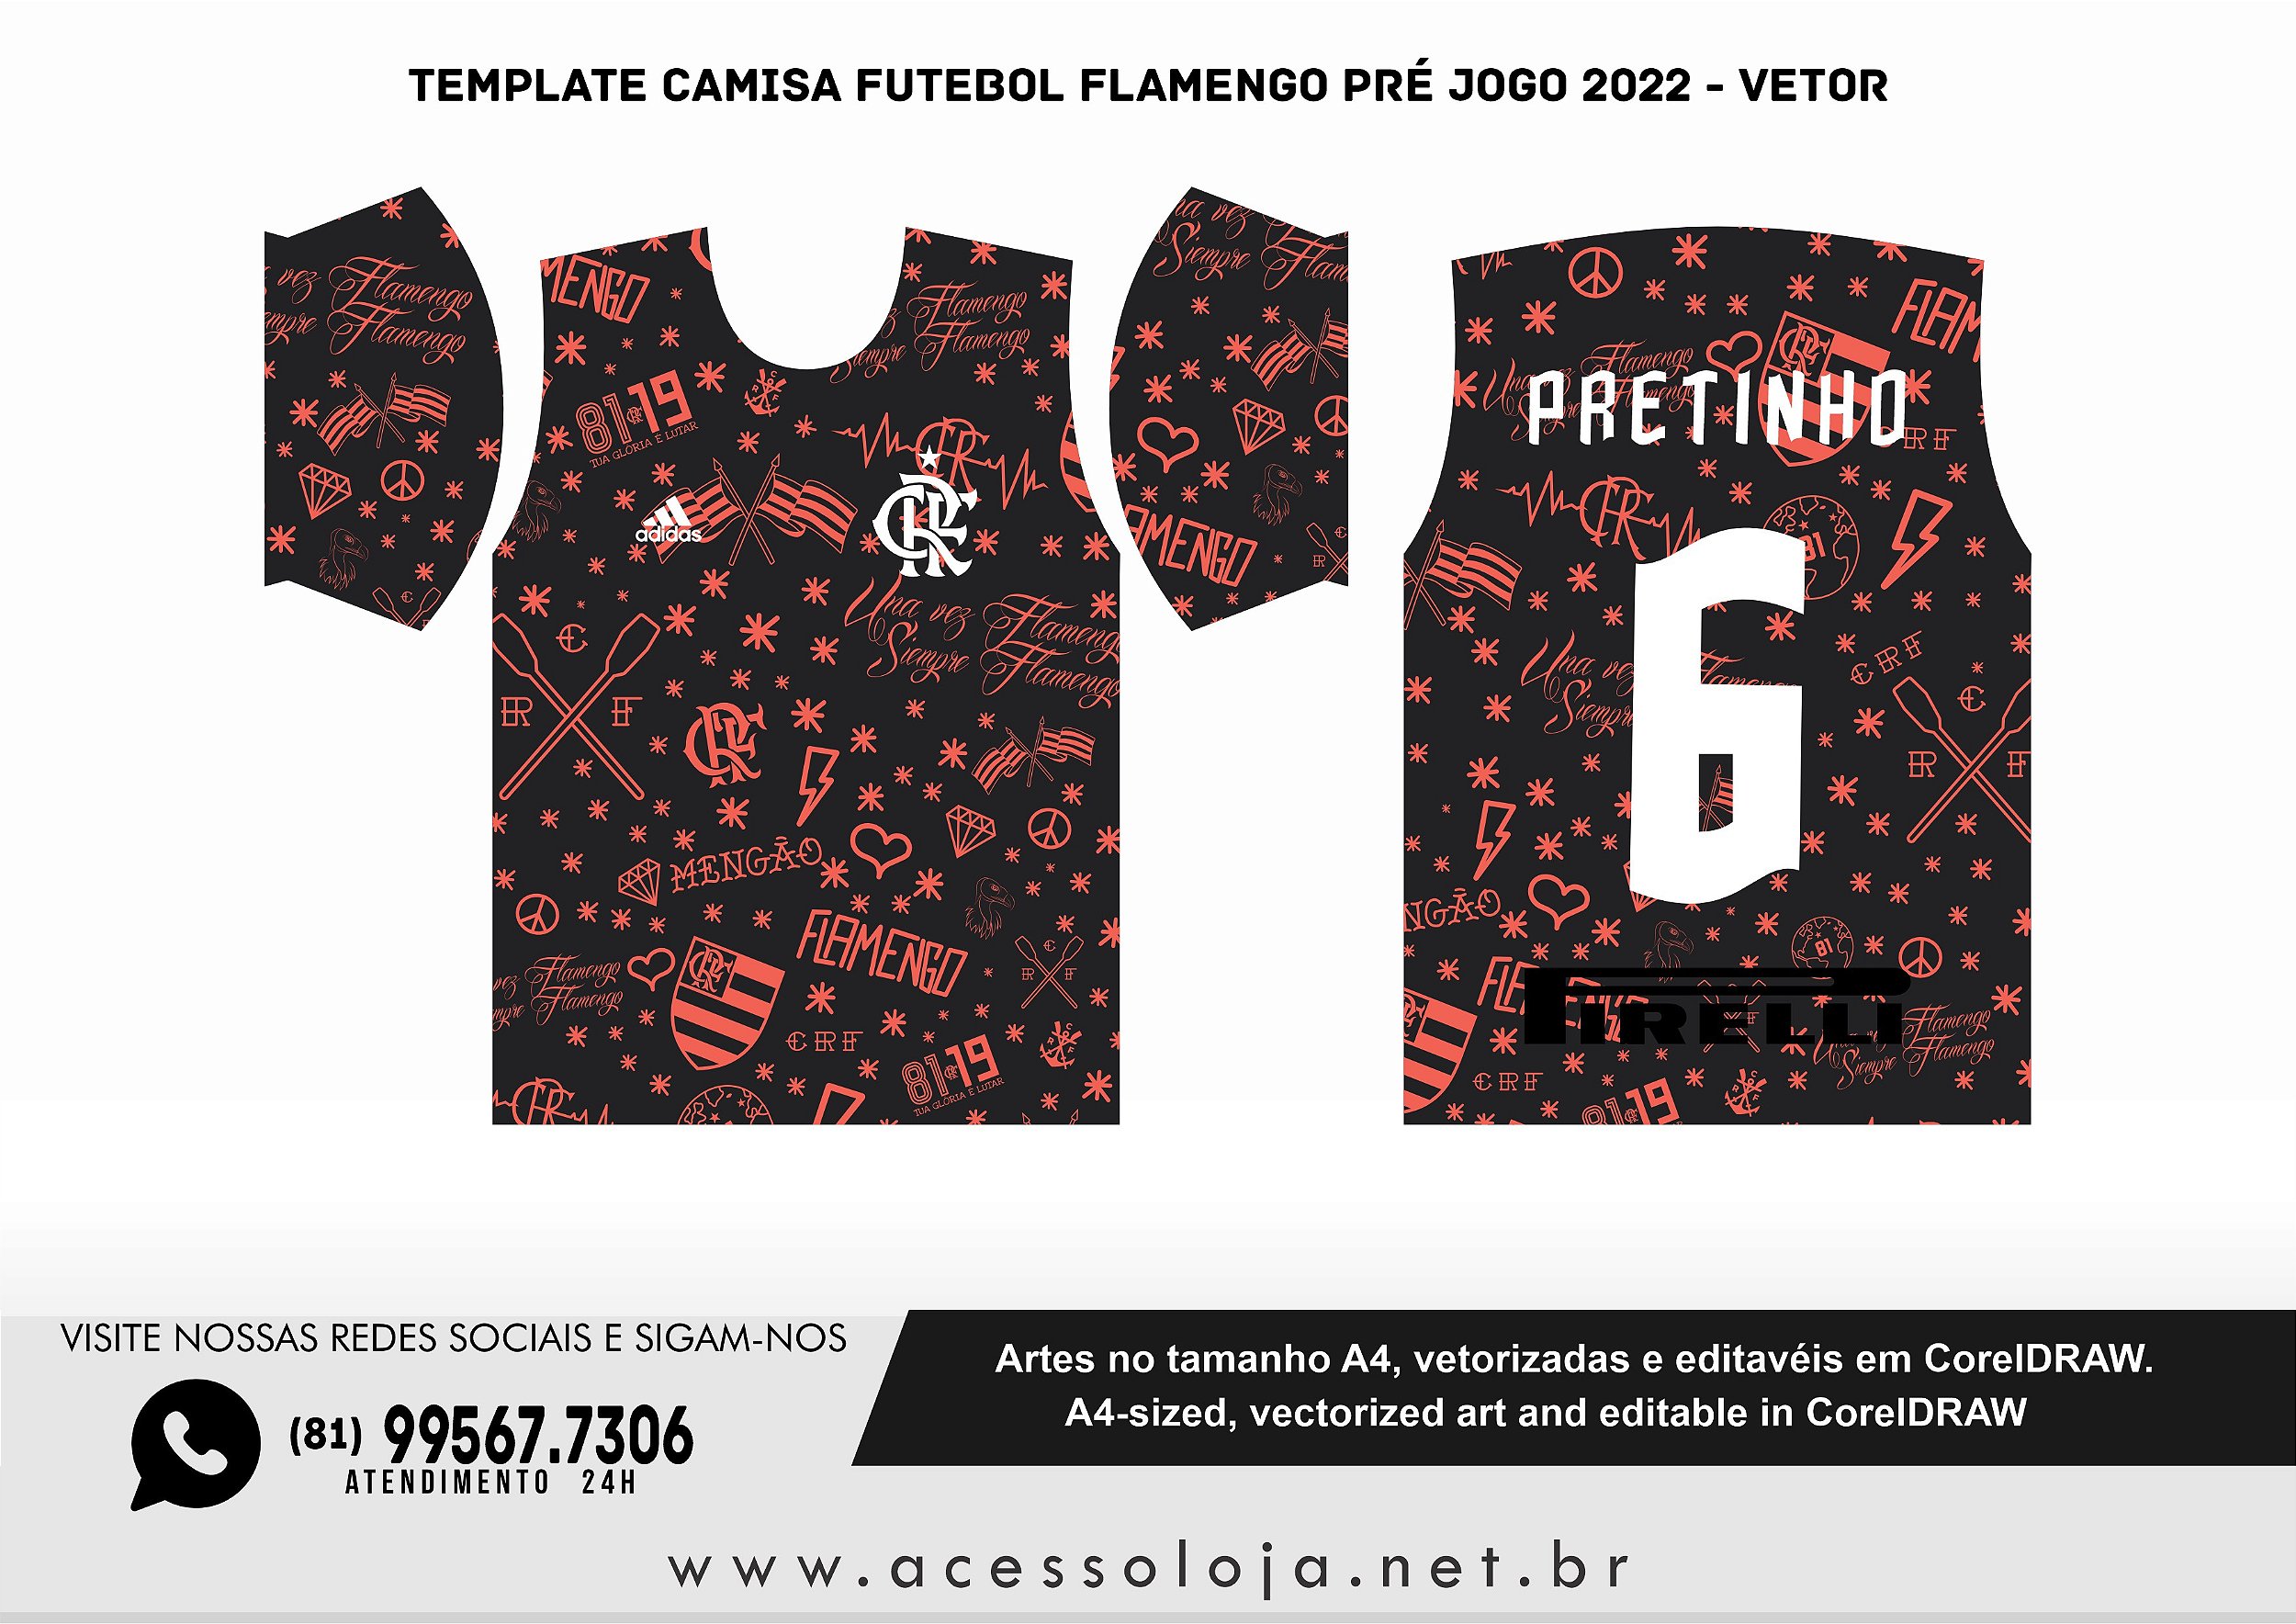 Template Camisa Futebol Flamengo pré jogo 2022 - Vetor - Acesso Loja - A  sua loja gráfica